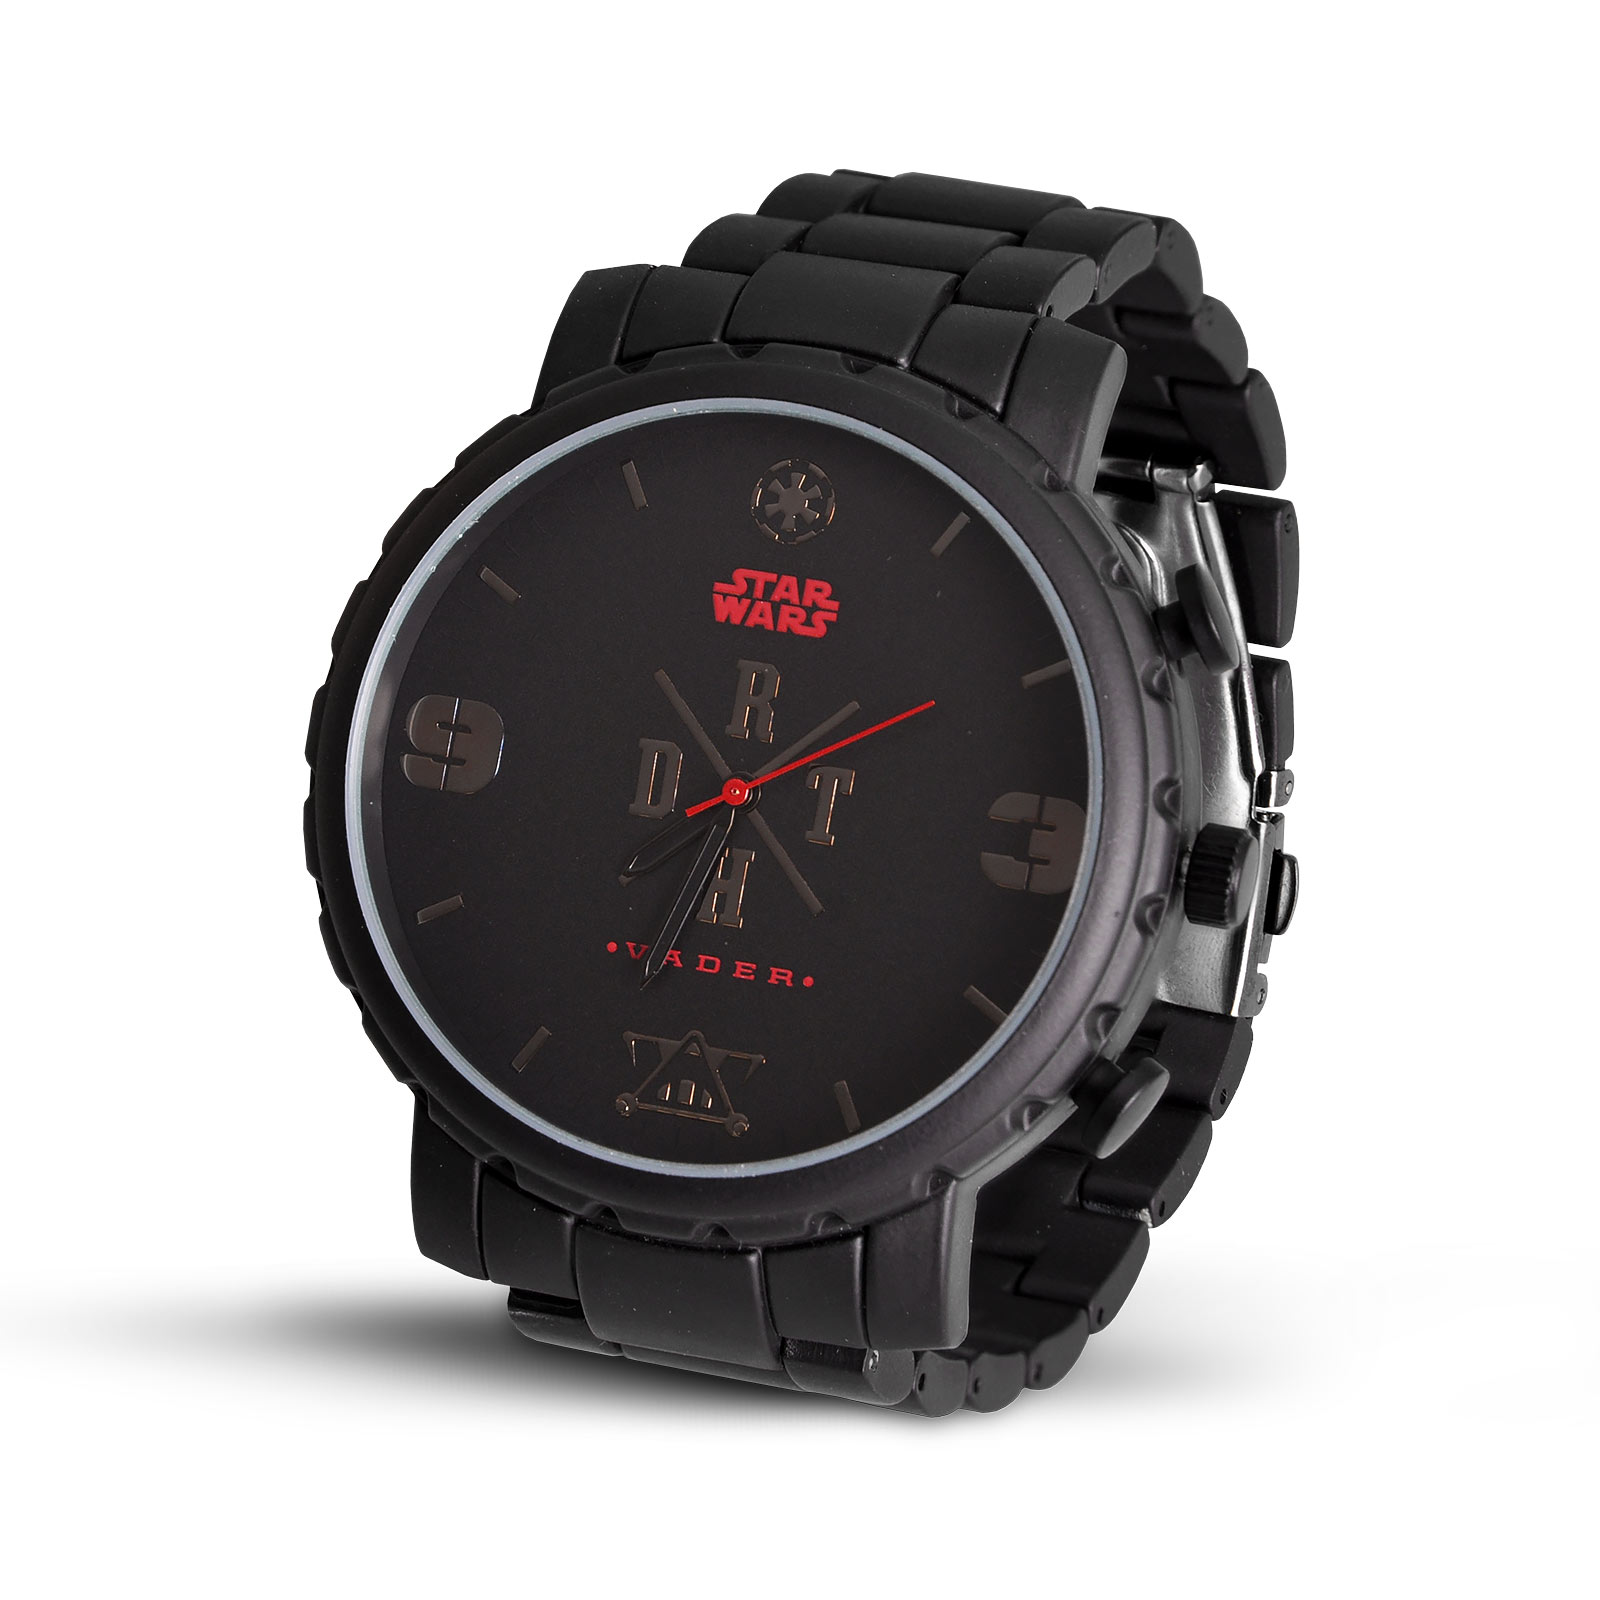 Star Wars - Darth Vader Armbanduhr schwarz